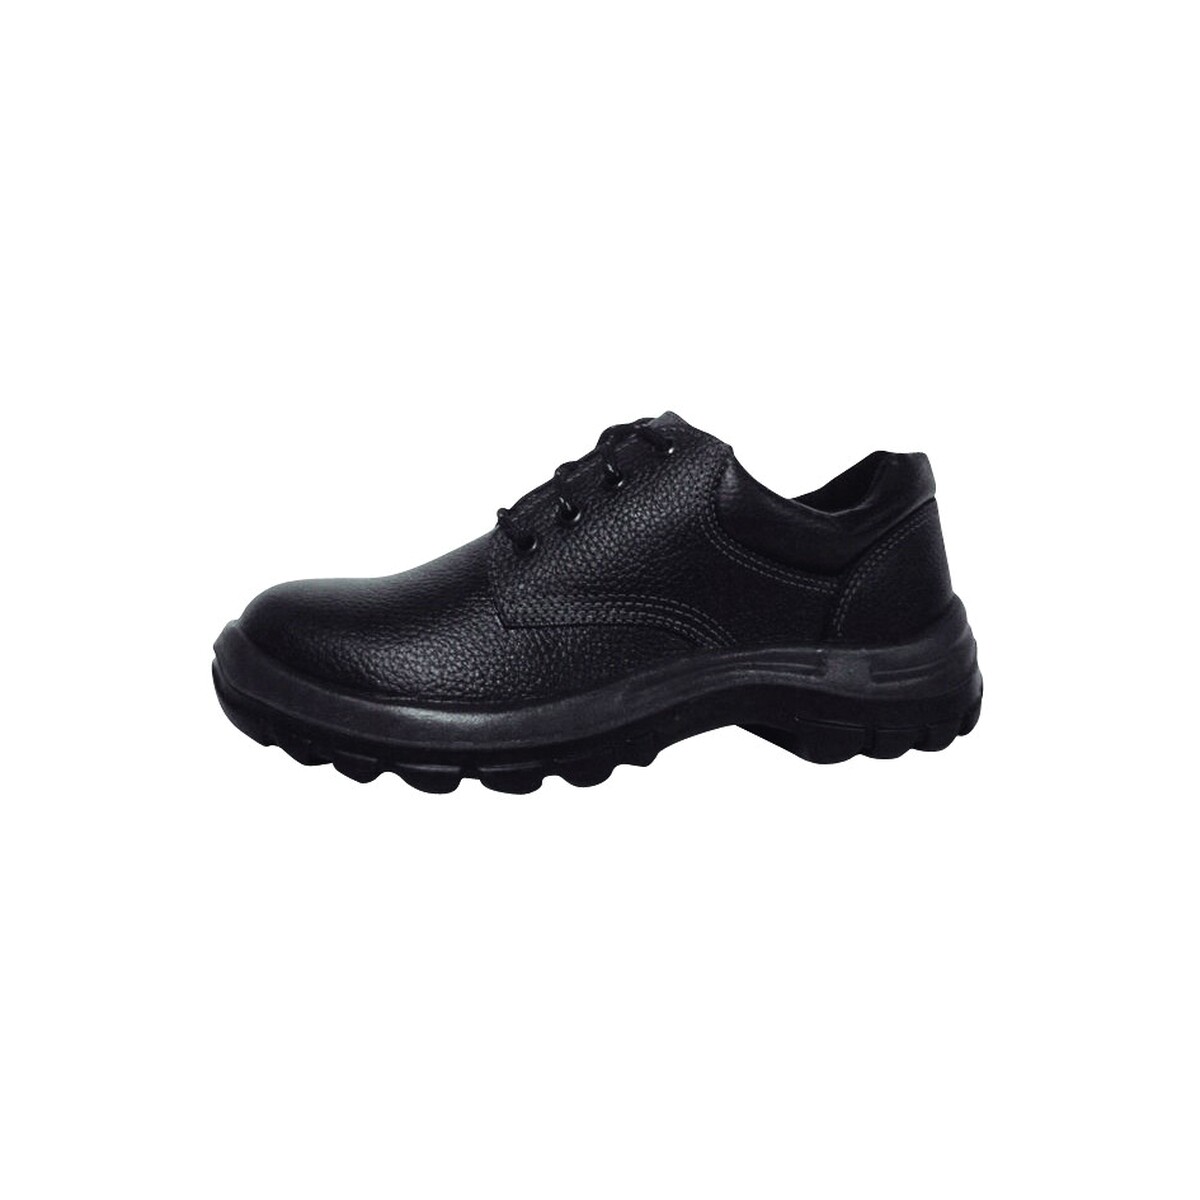 Zapato industrial con puntera plástica - Worksafe Nº 38 